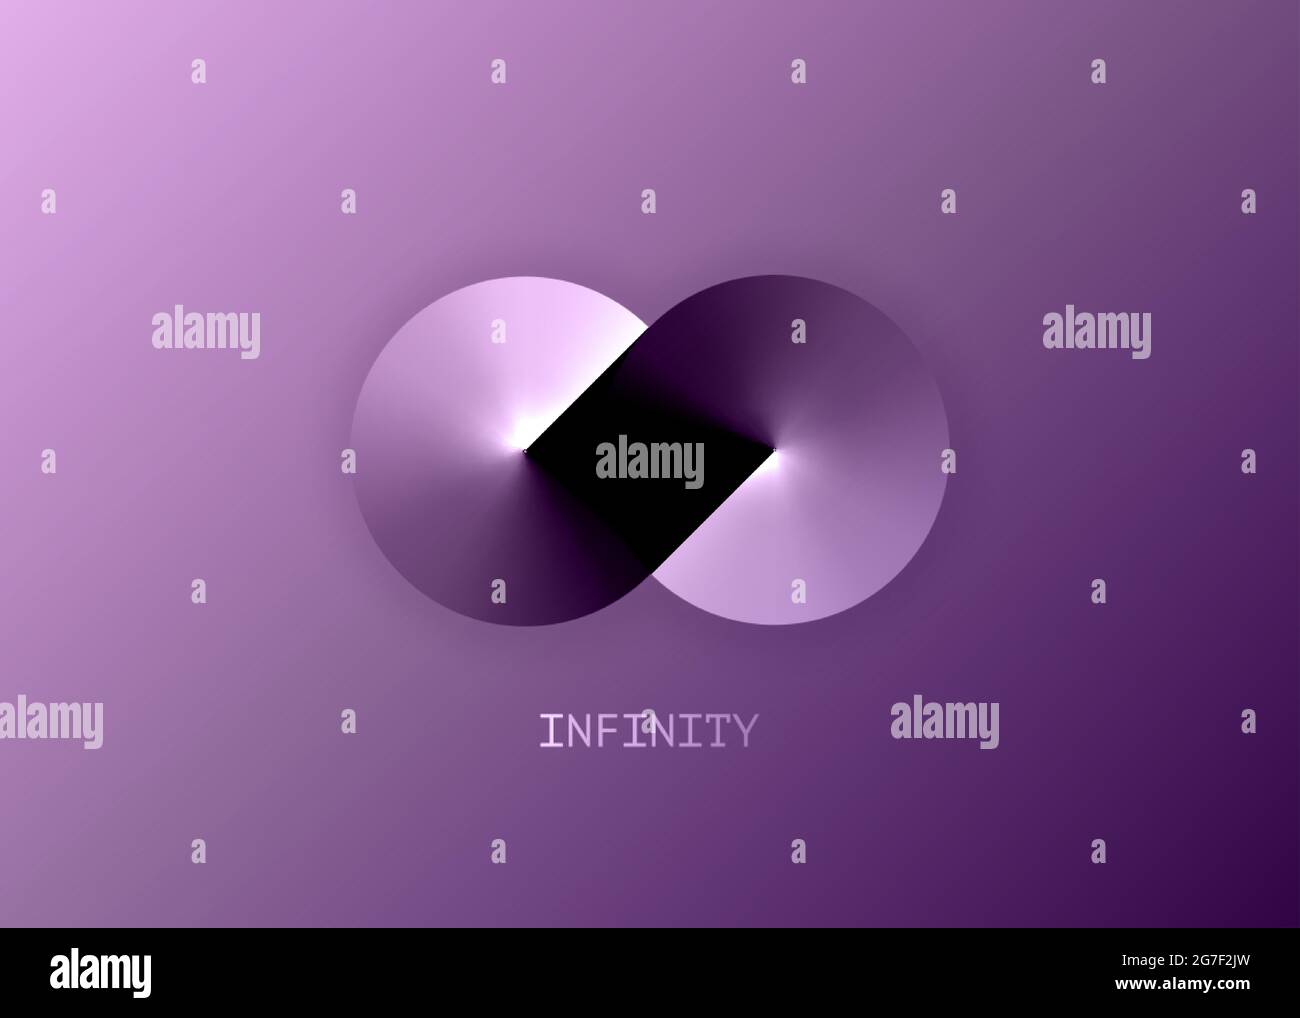 InfinityLogo-Vorlage für Ihr Design. Eternity-Konzept in metallischen Farbverlauf, abstrakt metallischen Zeichen violetten Spektrum-Symbol, Metall-Schleife Stock Vektor